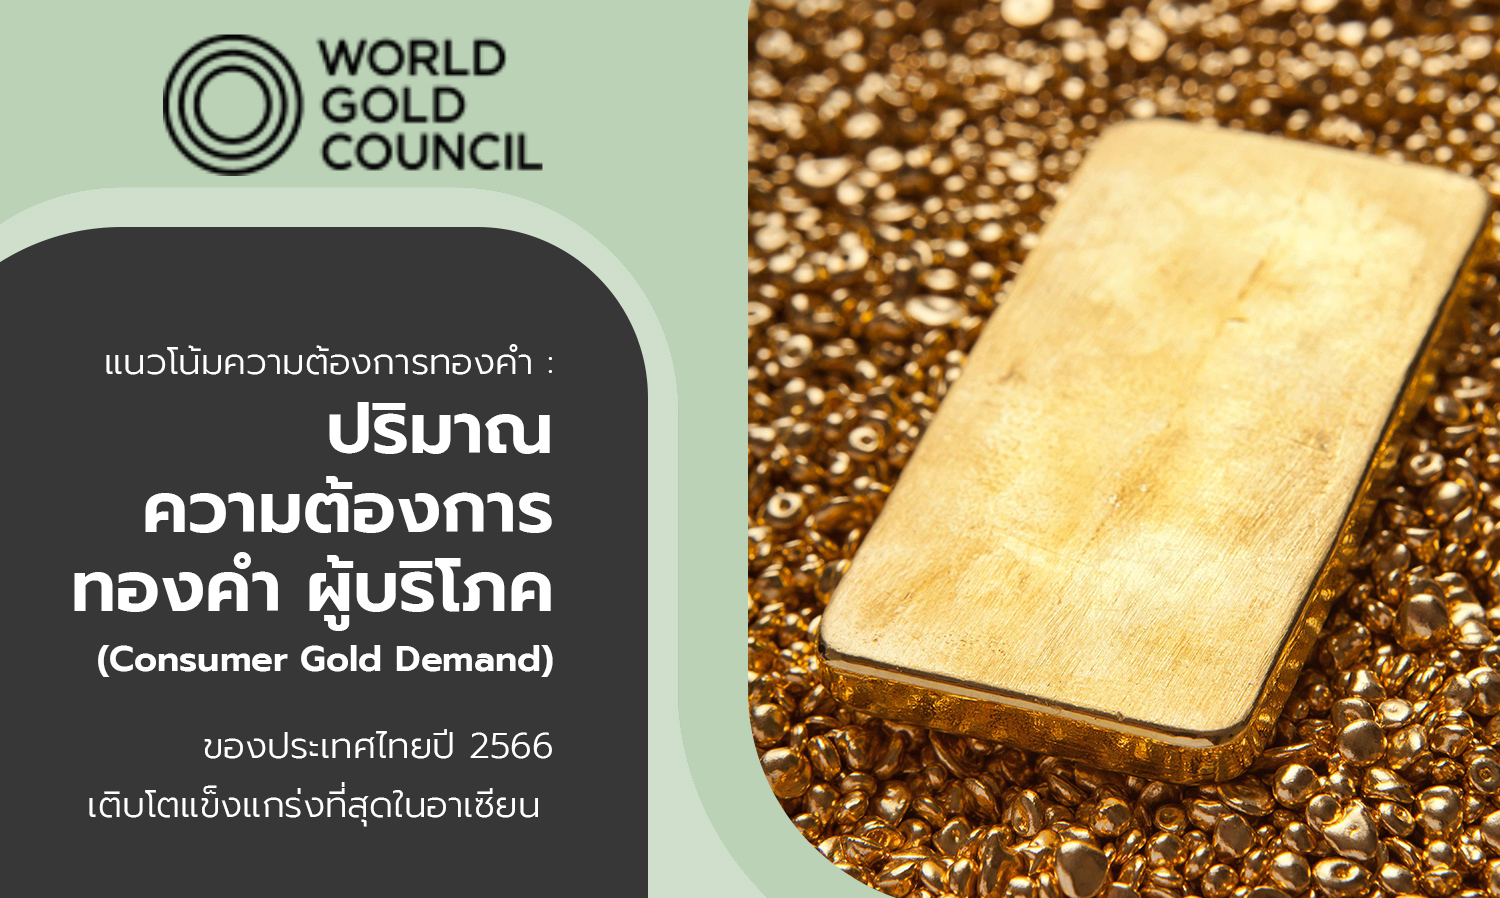 แนวโน้มความต้องการทองคำ ปริมาณความต้องการทองคำผู้บริโภคของประเทศไทยปี 2566 เติบโตแข็งแกร่งที่สุดในอาเซียน